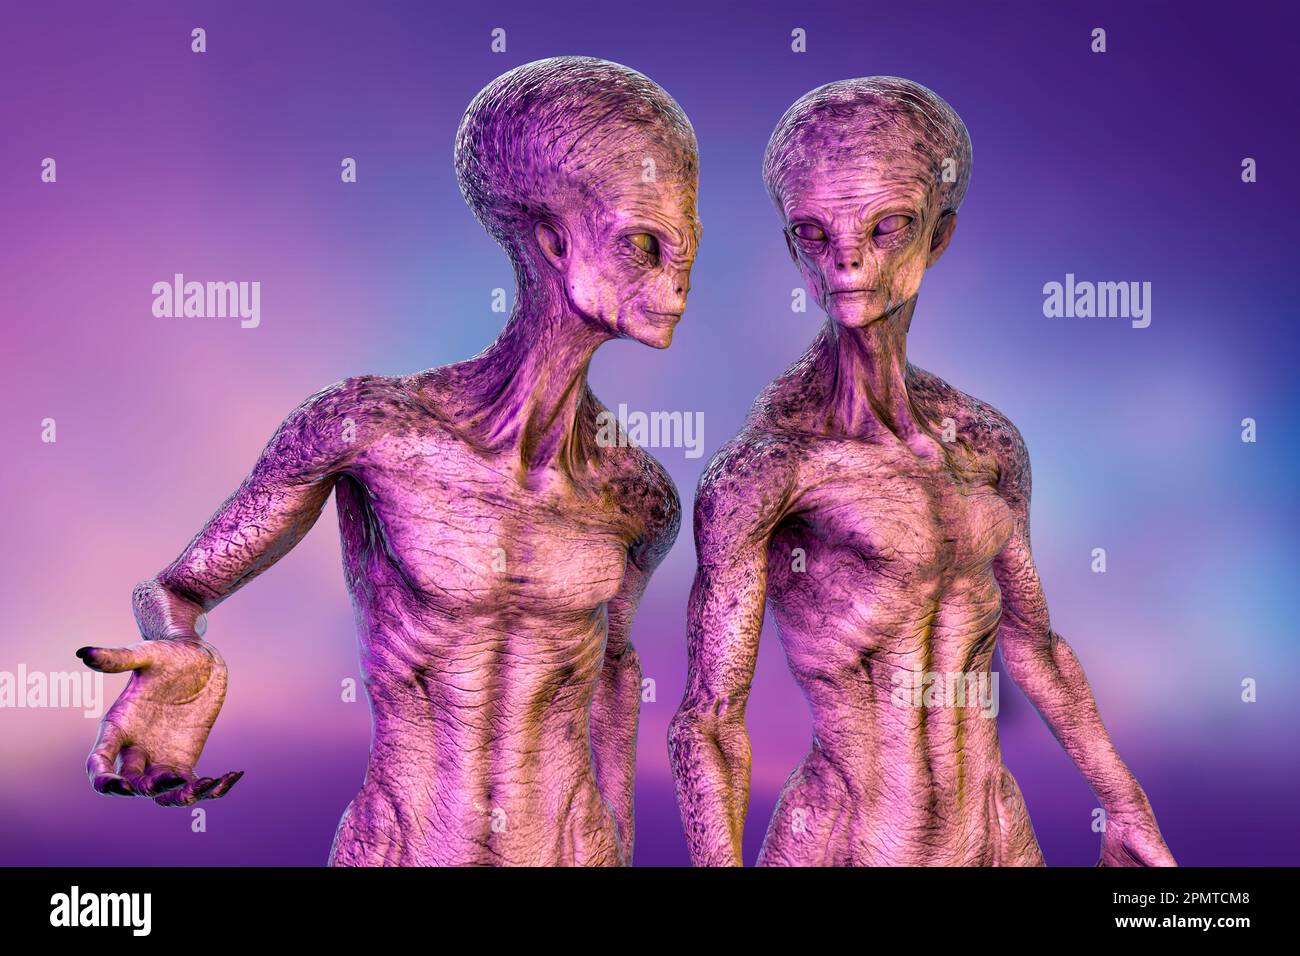 Alien, illustration Stock Photo